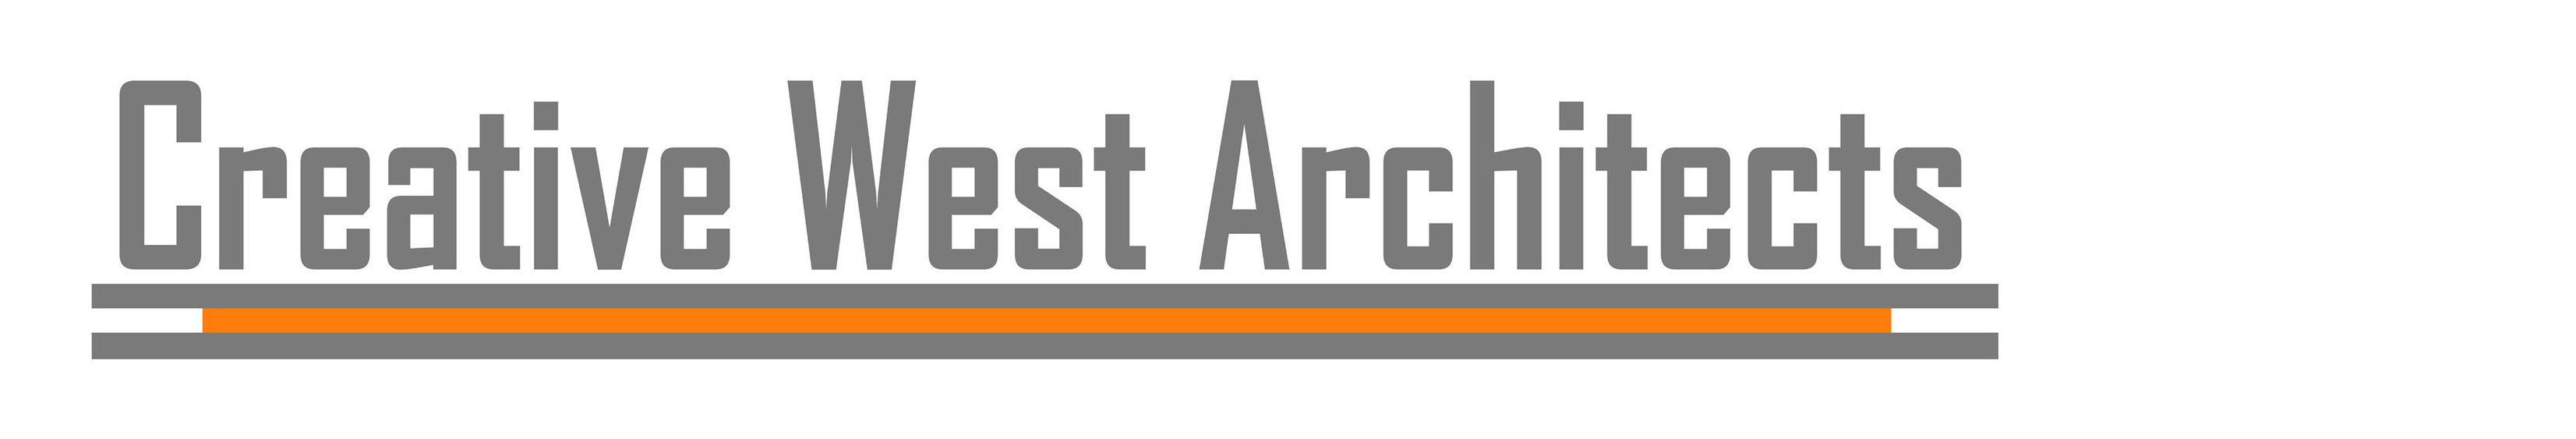 Creative West Architects Logo